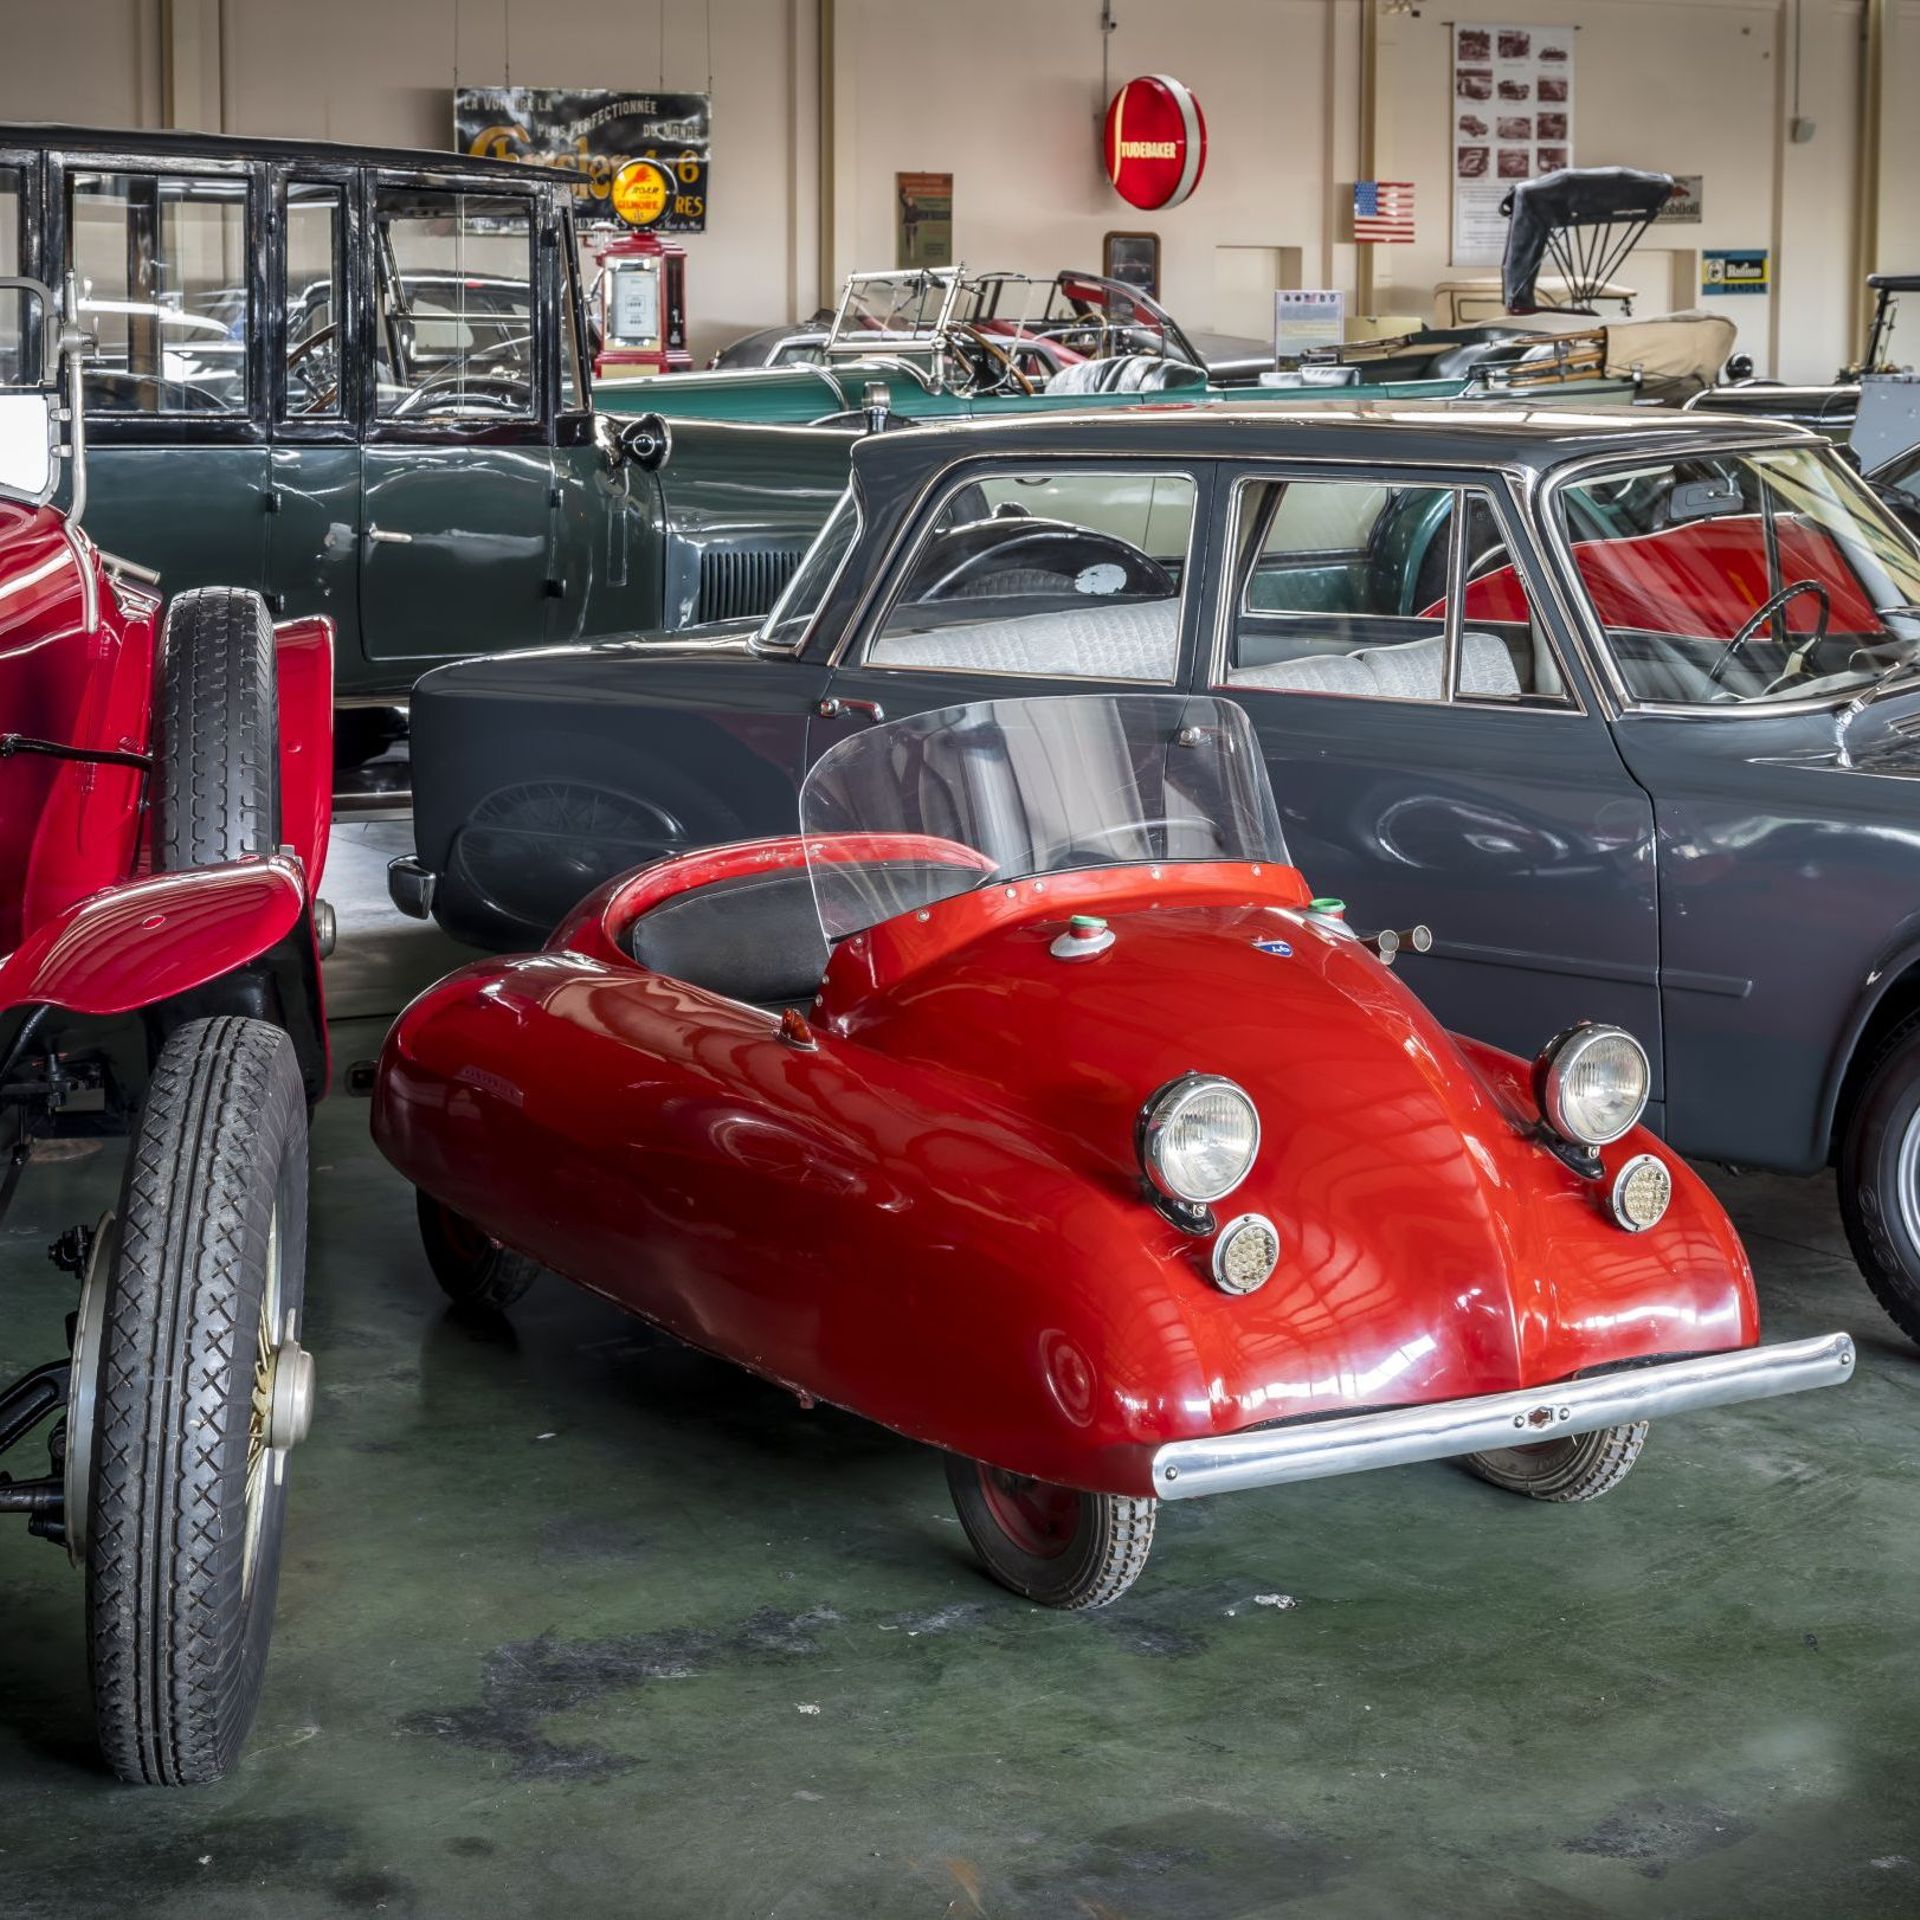 Des petites voitures parmi les grandes au Musée de l'automobile